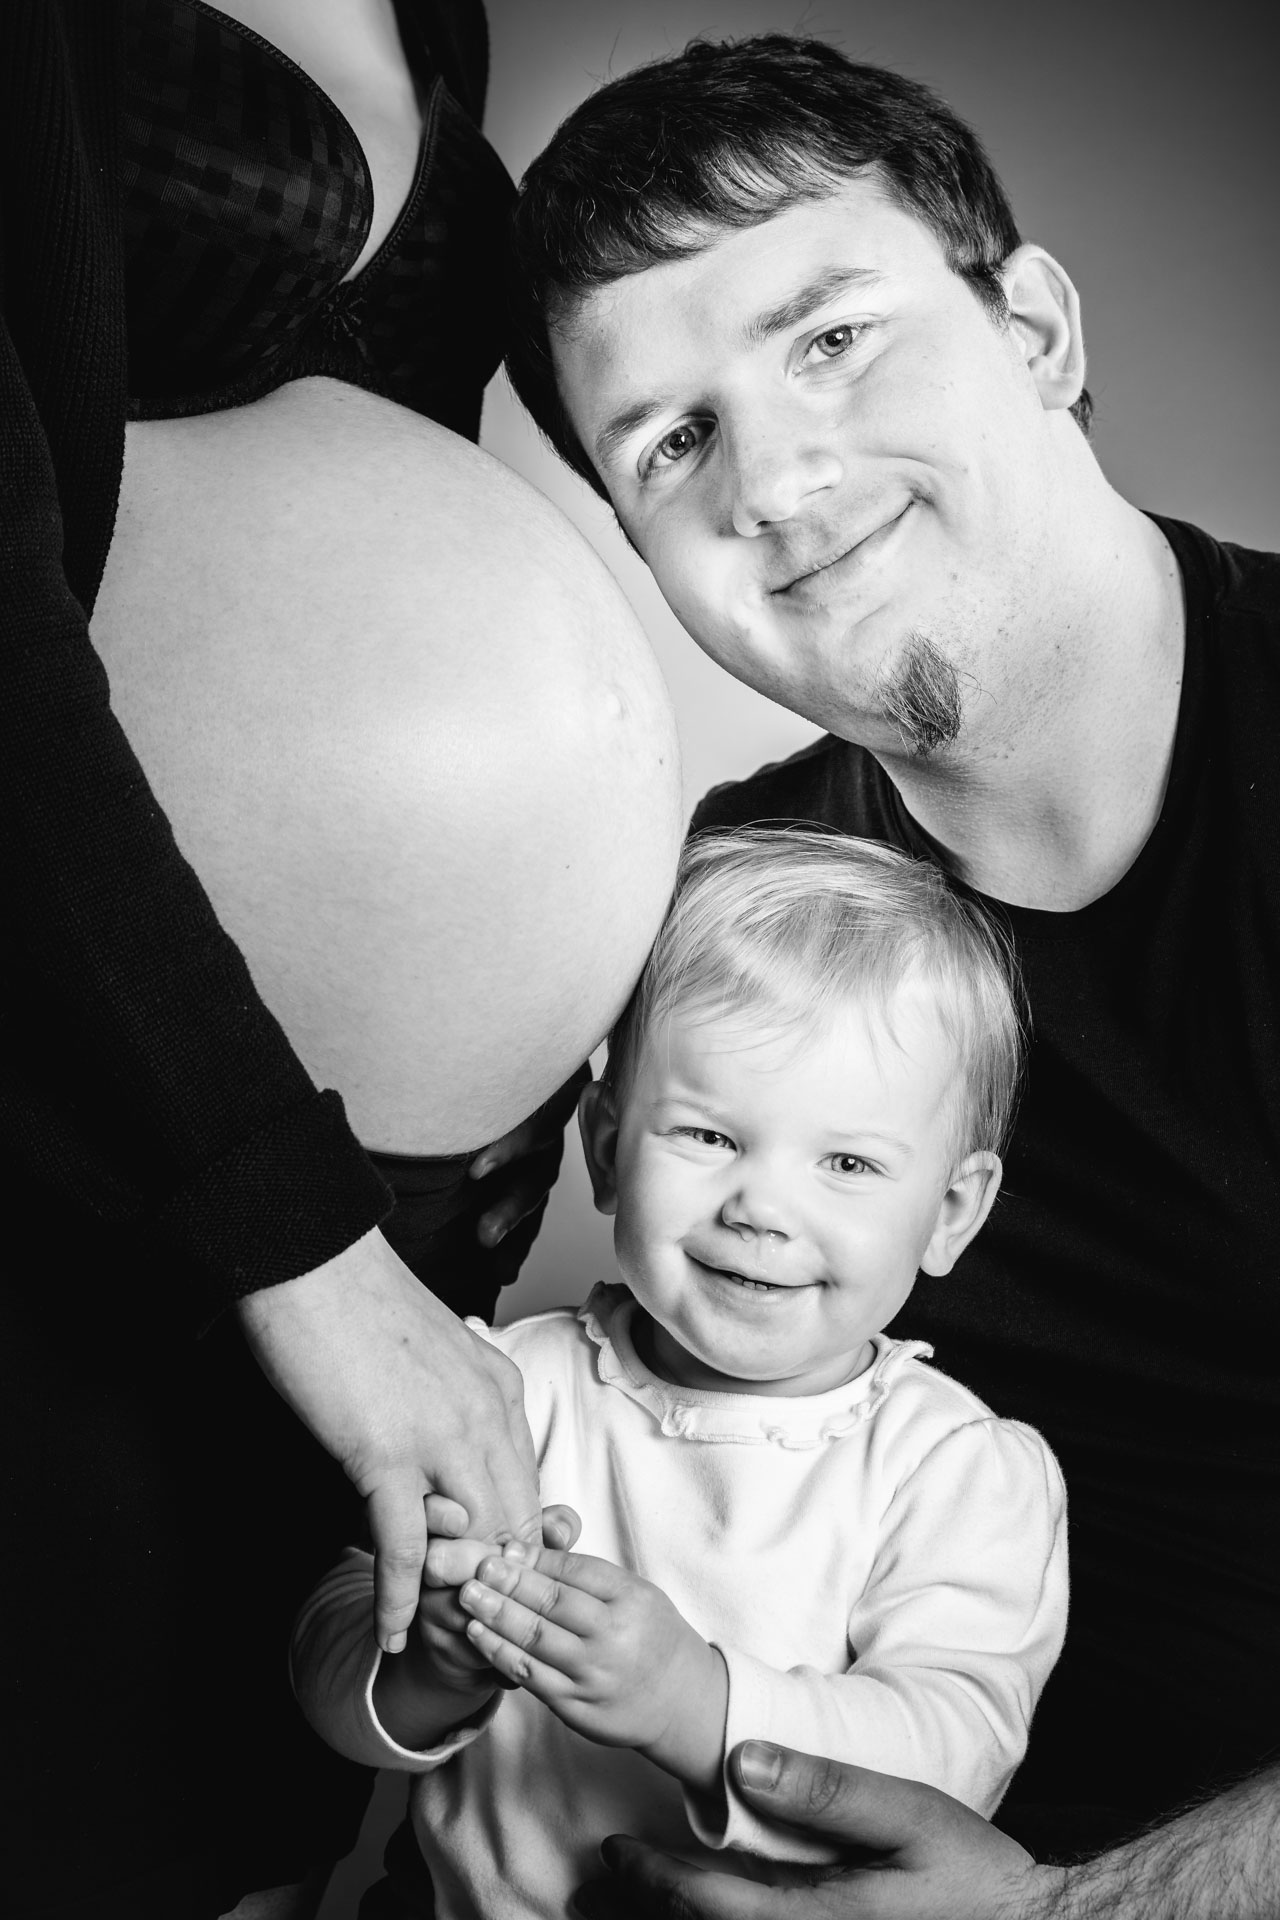 Familienfotos-schwangerschaftsfotografie-babybauch-Fotoshooting-Hamburg106